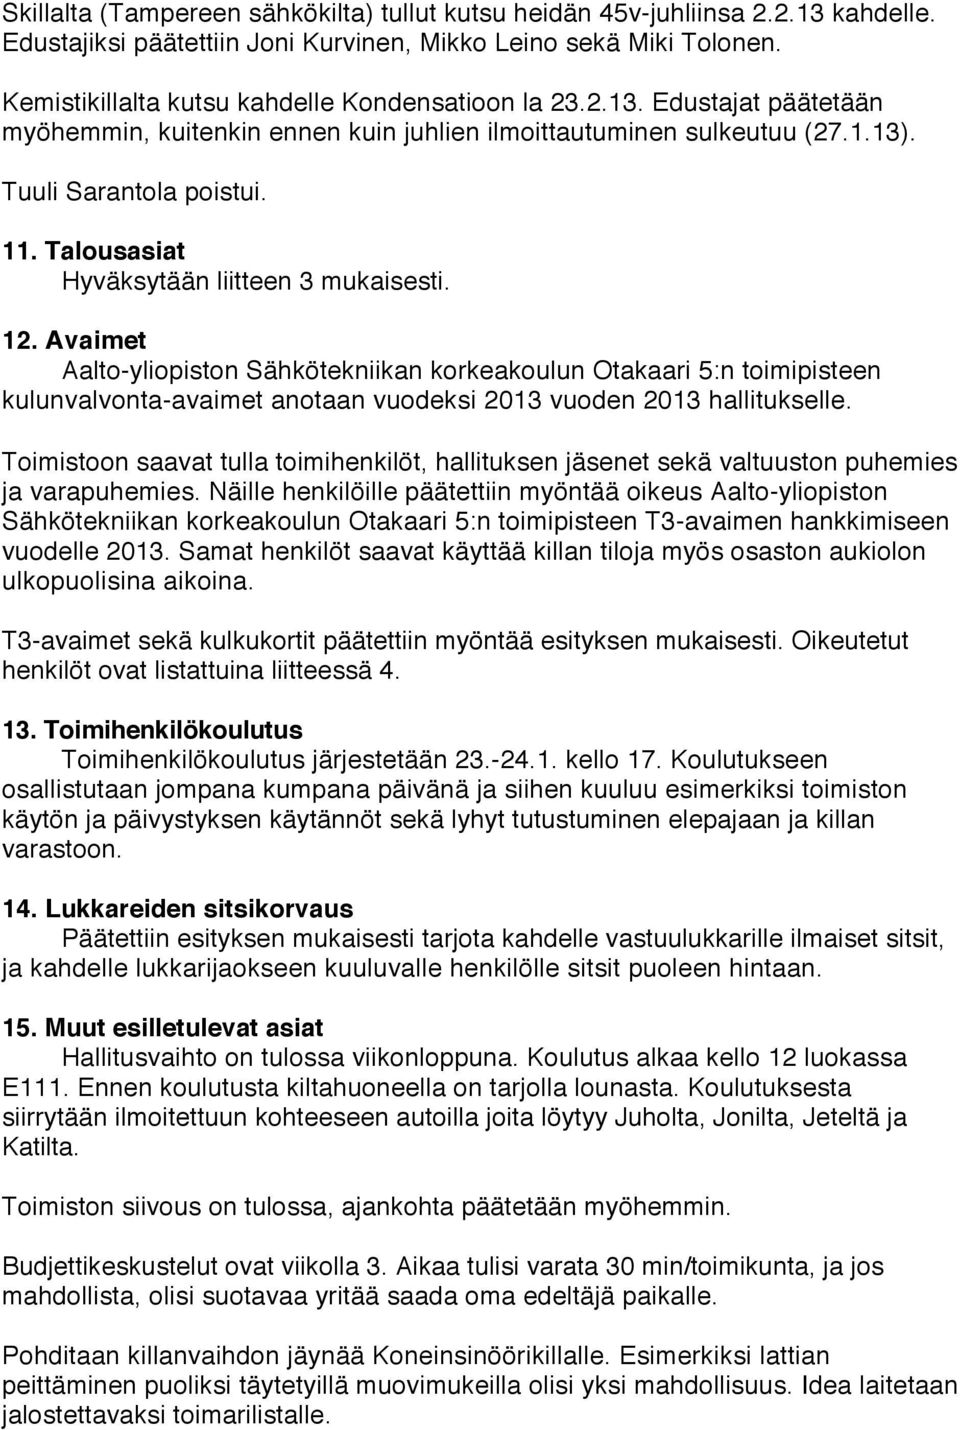 Talousasiat Hyväksytään liitteen 3 mukaisesti. 12. Avaimet Aalto-yliopiston Sähkötekniikan korkeakoulun Otakaari 5:n toimipisteen kulunvalvonta-avaimet anotaan vuodeksi 2013 vuoden 2013 hallitukselle.